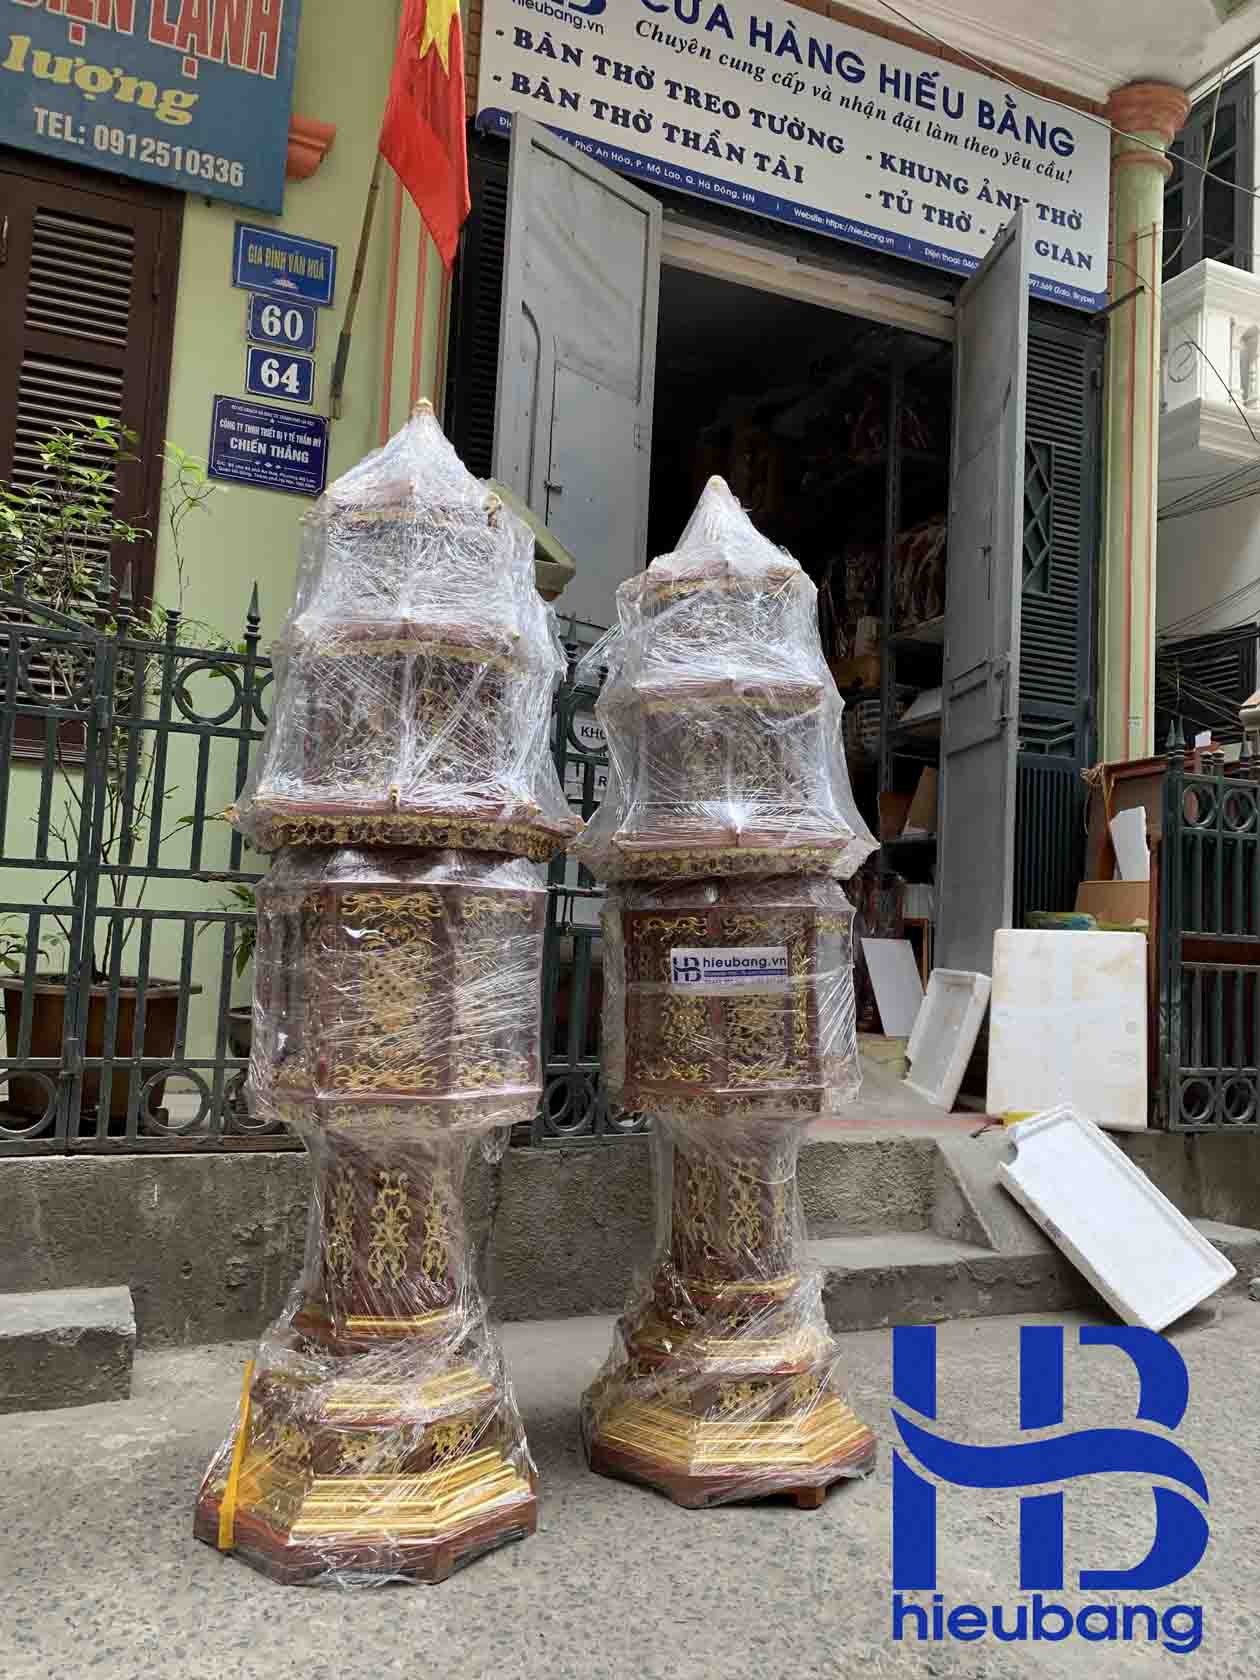 Đèn tháp gỗ Huowgn 180 dát vàng đẹp giá rẻ ở Hà Nội